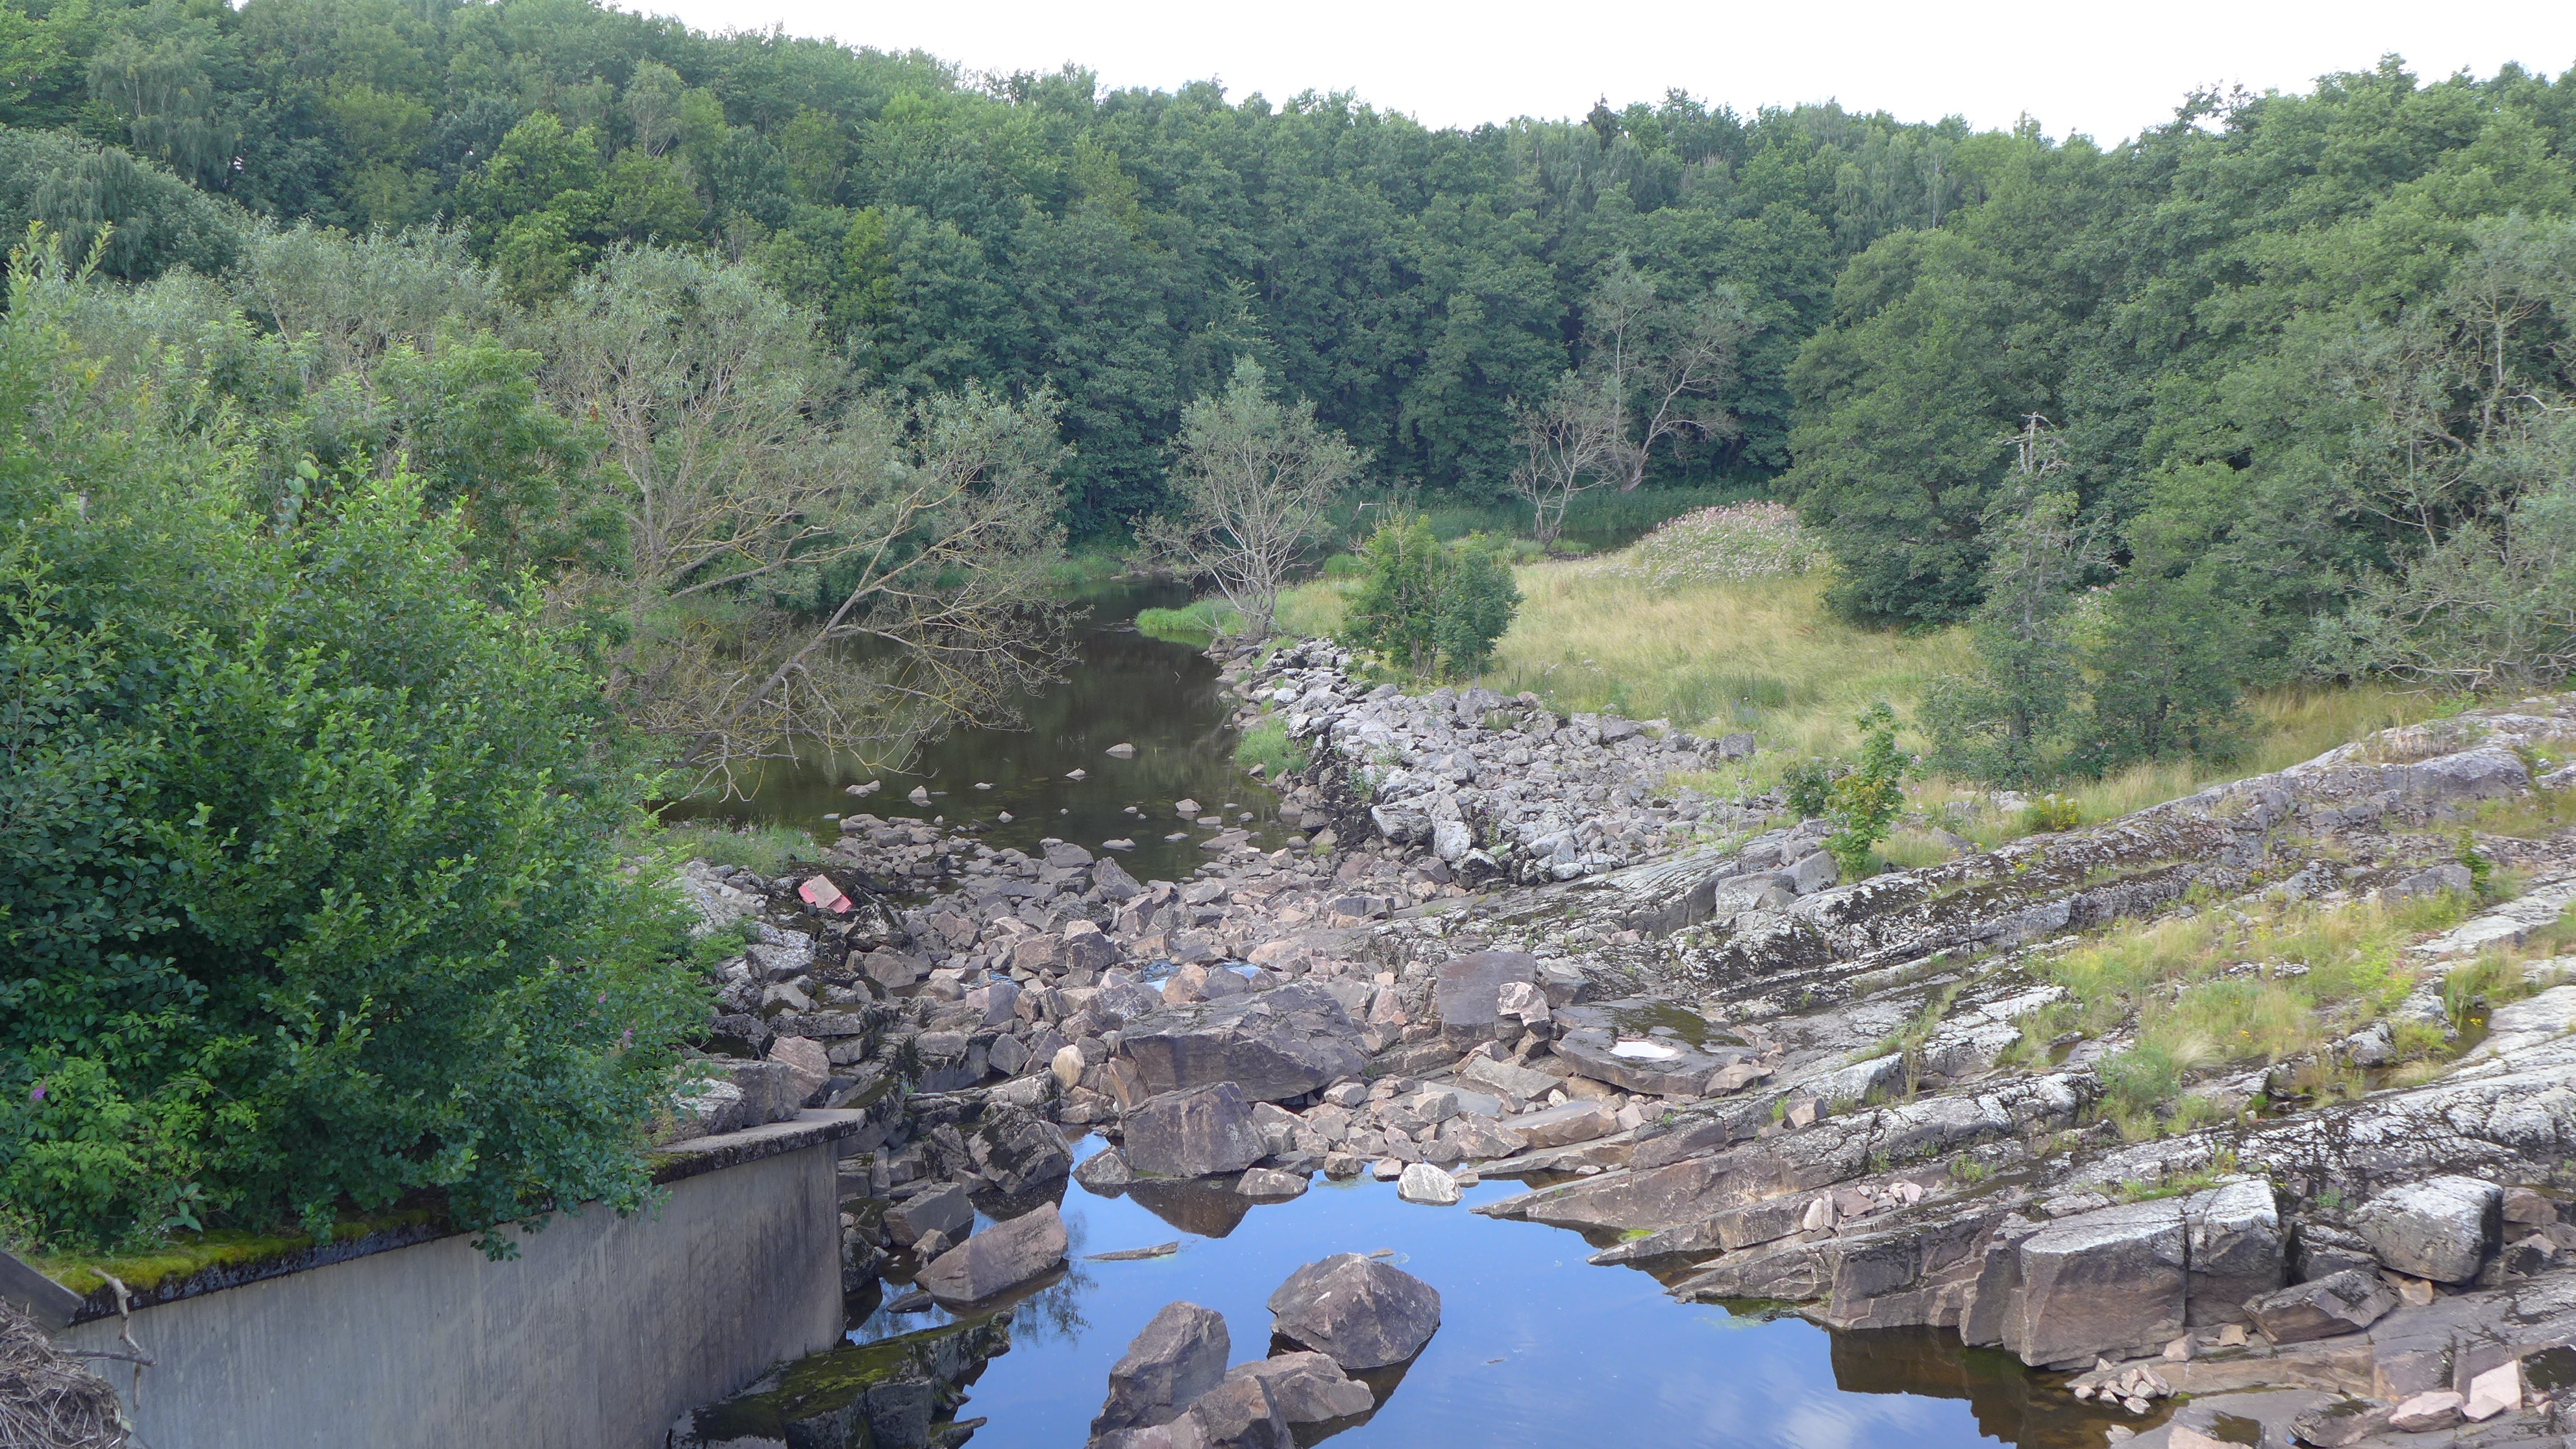 Dammbyggnaden är uppfört på berg i dagen och medför mycket stenig botten nedströms anläggningen.